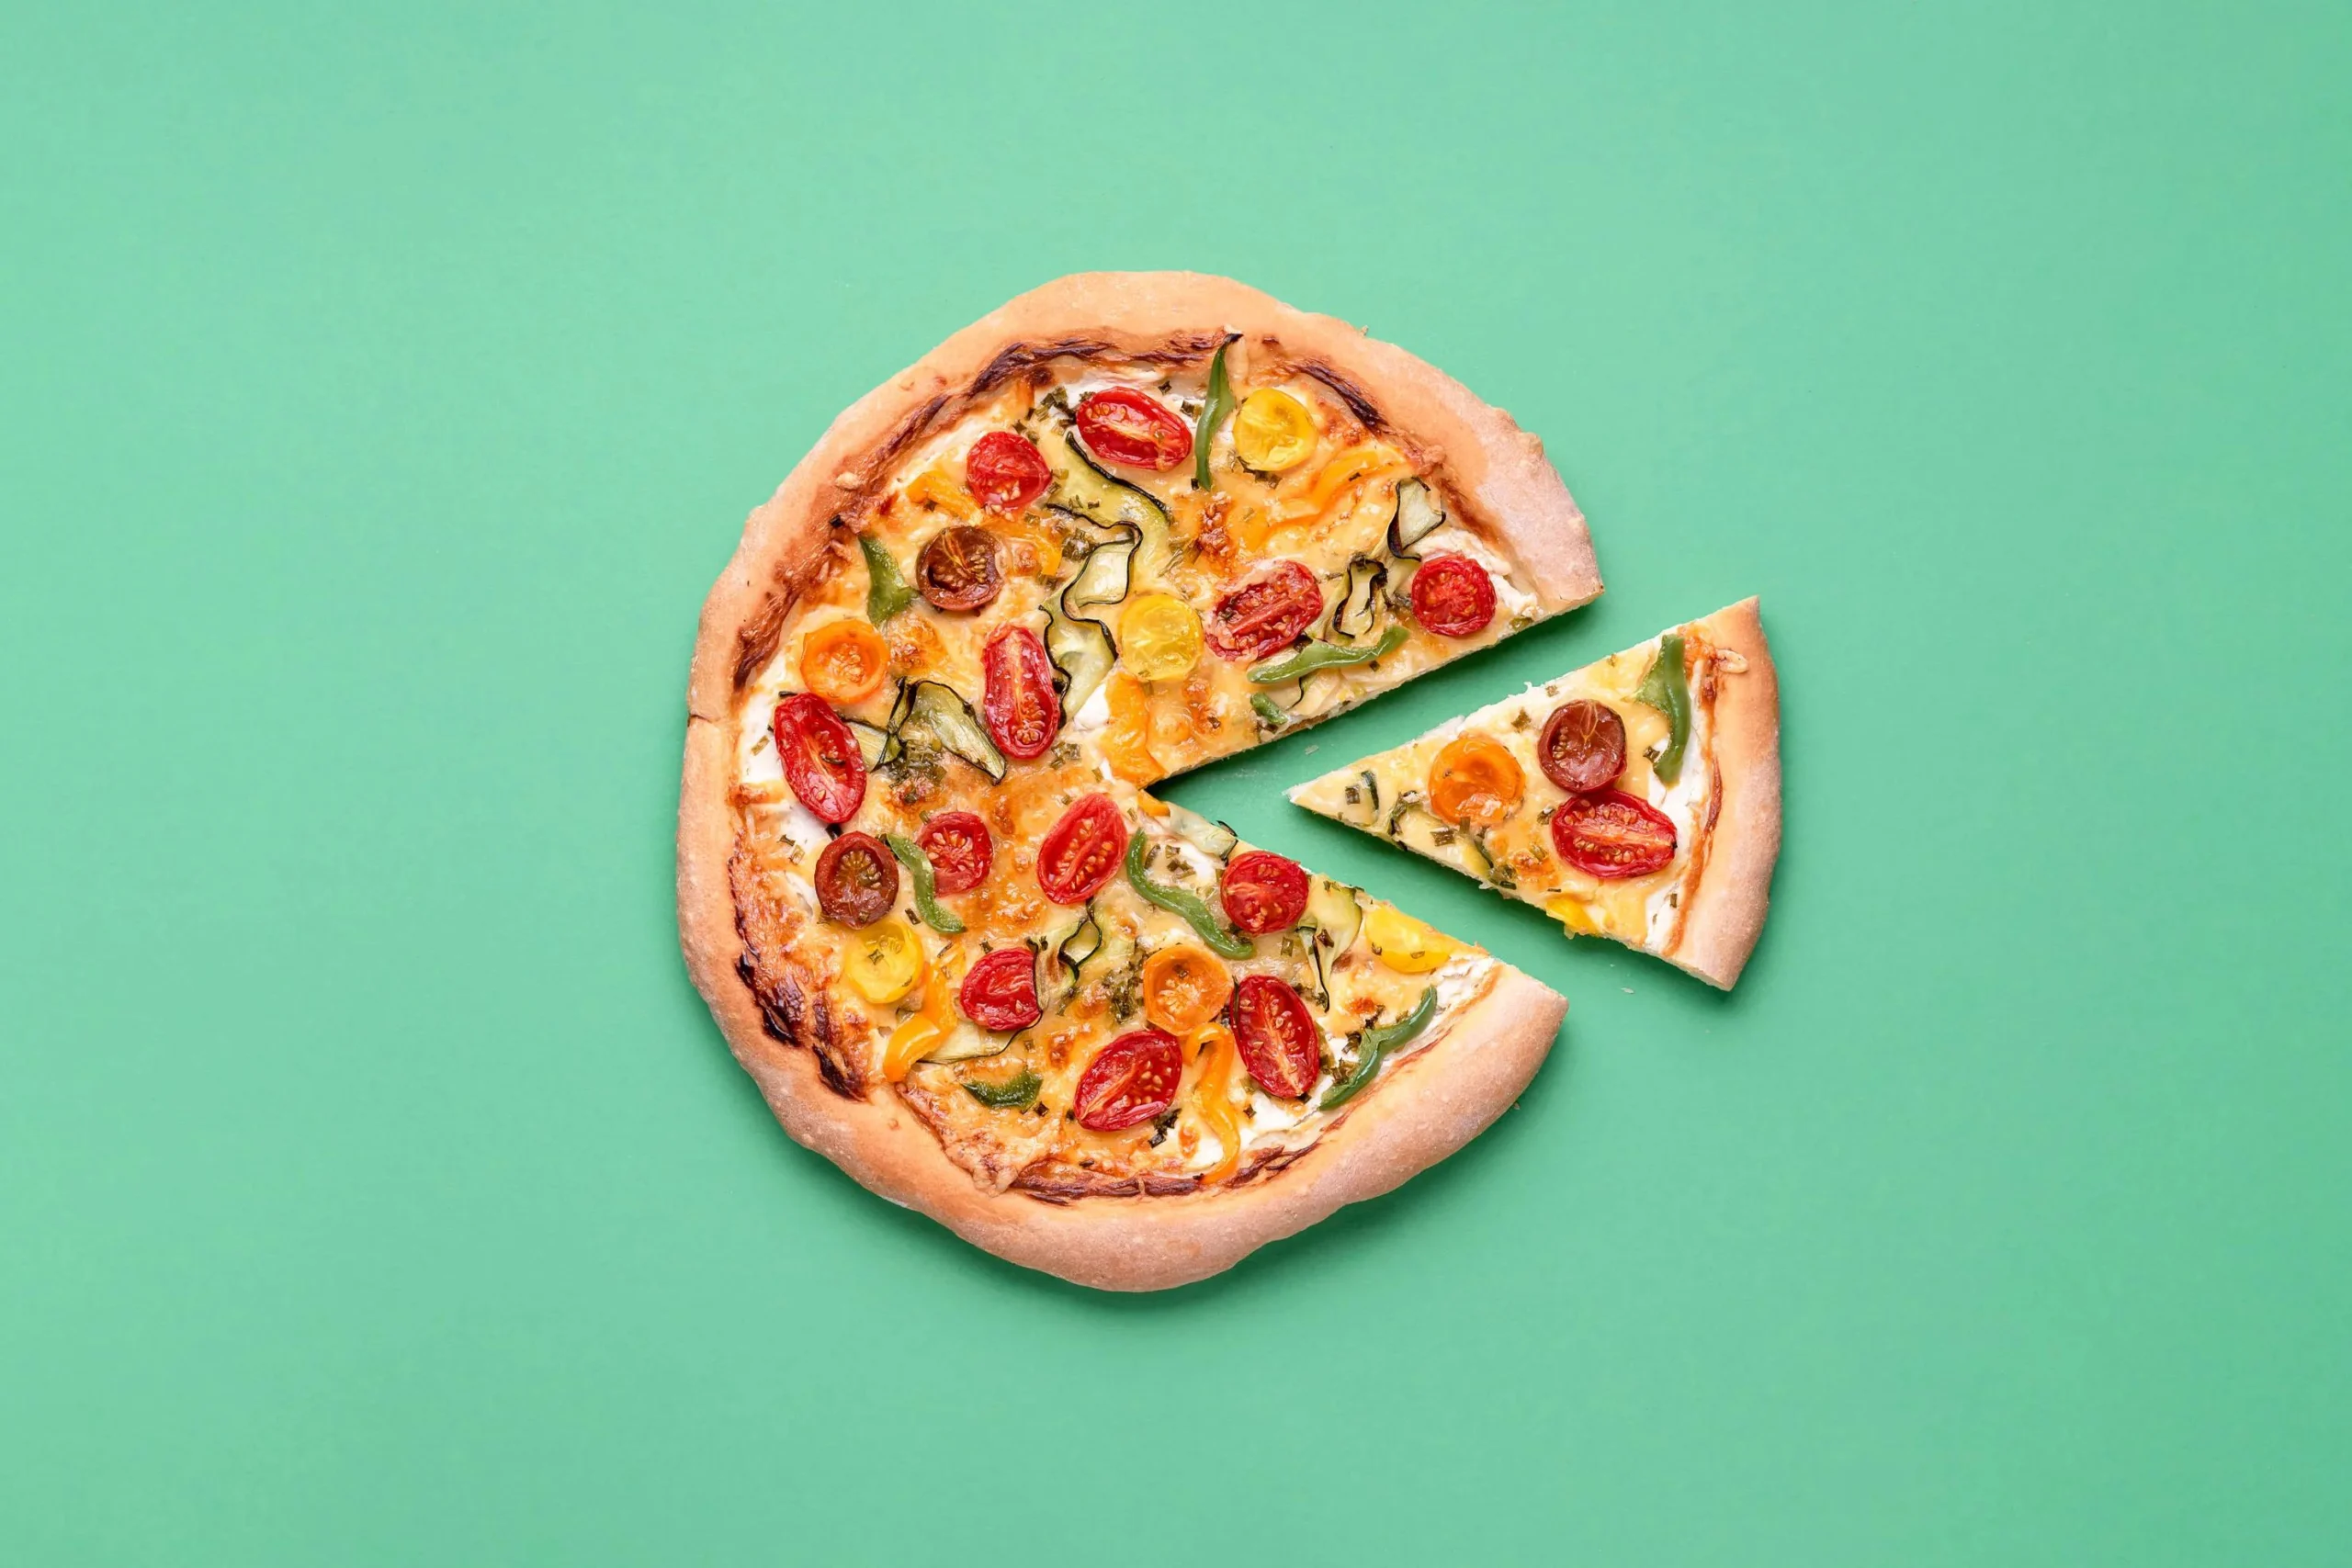 cuantas calorias tiene un trozo de pizza - Cuántas calorías son 2 pedazos de pizza